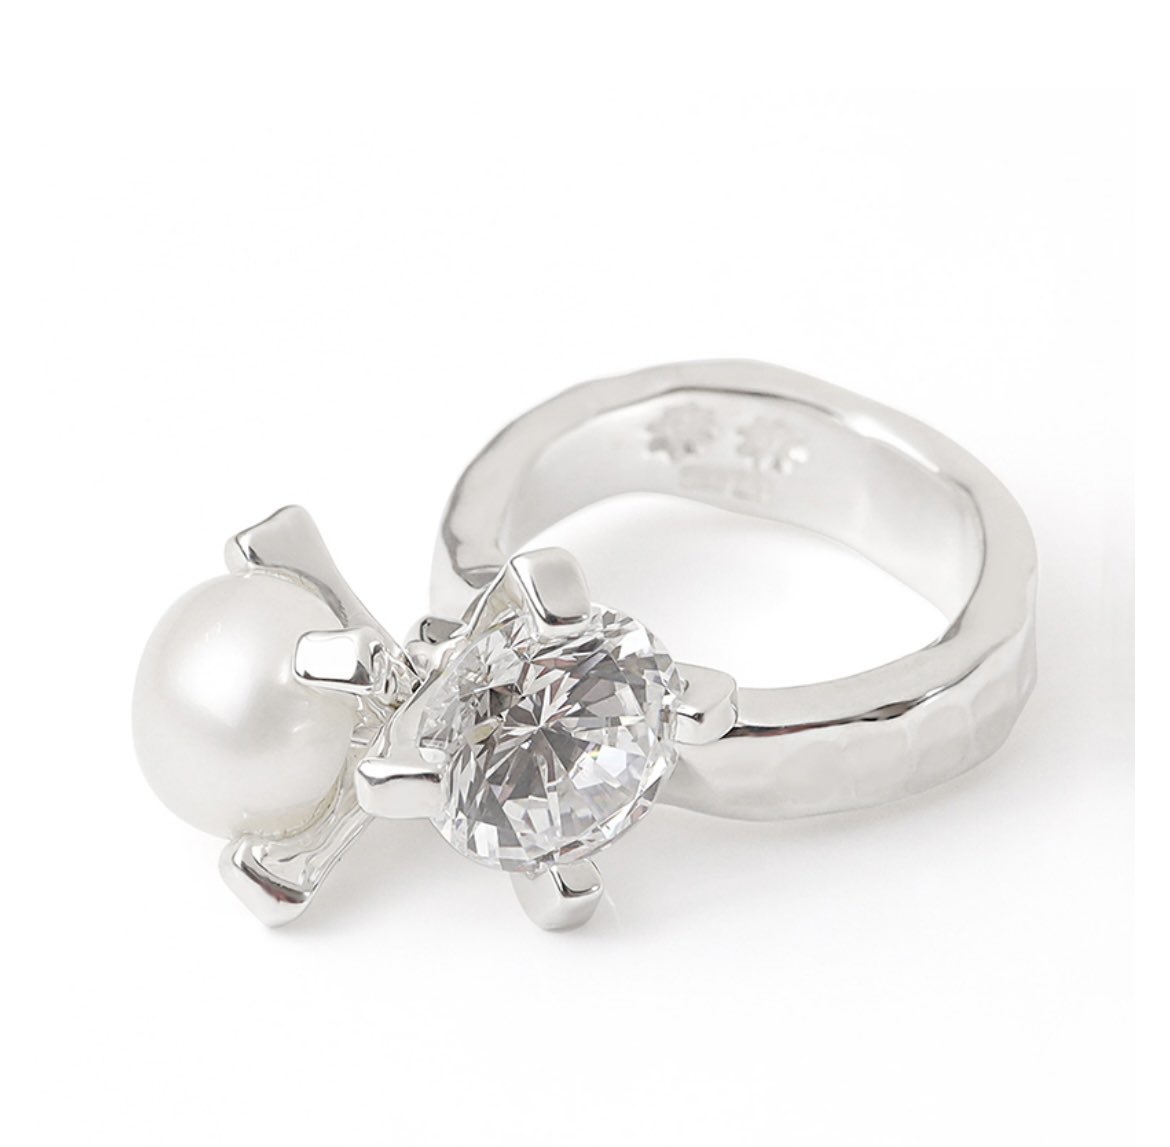 「ごんぶと指コンプレックスで指輪苦手だけど今欲しいなって指輪があって…でもデザイン」|田中スーザン美ふゆのイラスト